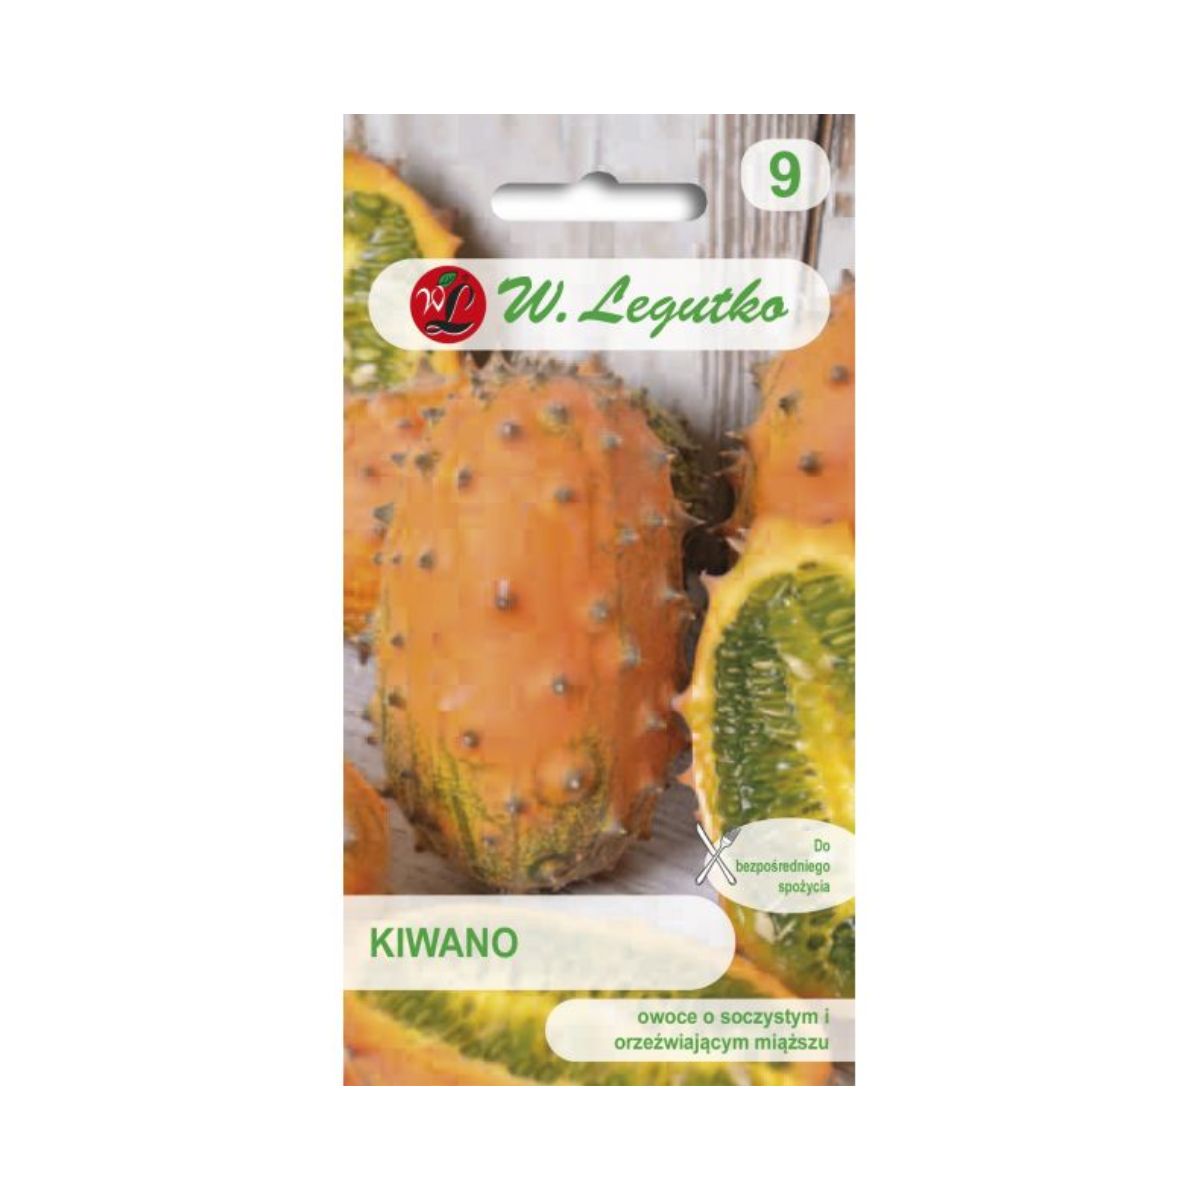 Seminte de legume HOBBY - Seminte de Kiwano, 0,2 gr, LEGUTKO, hectarul.ro